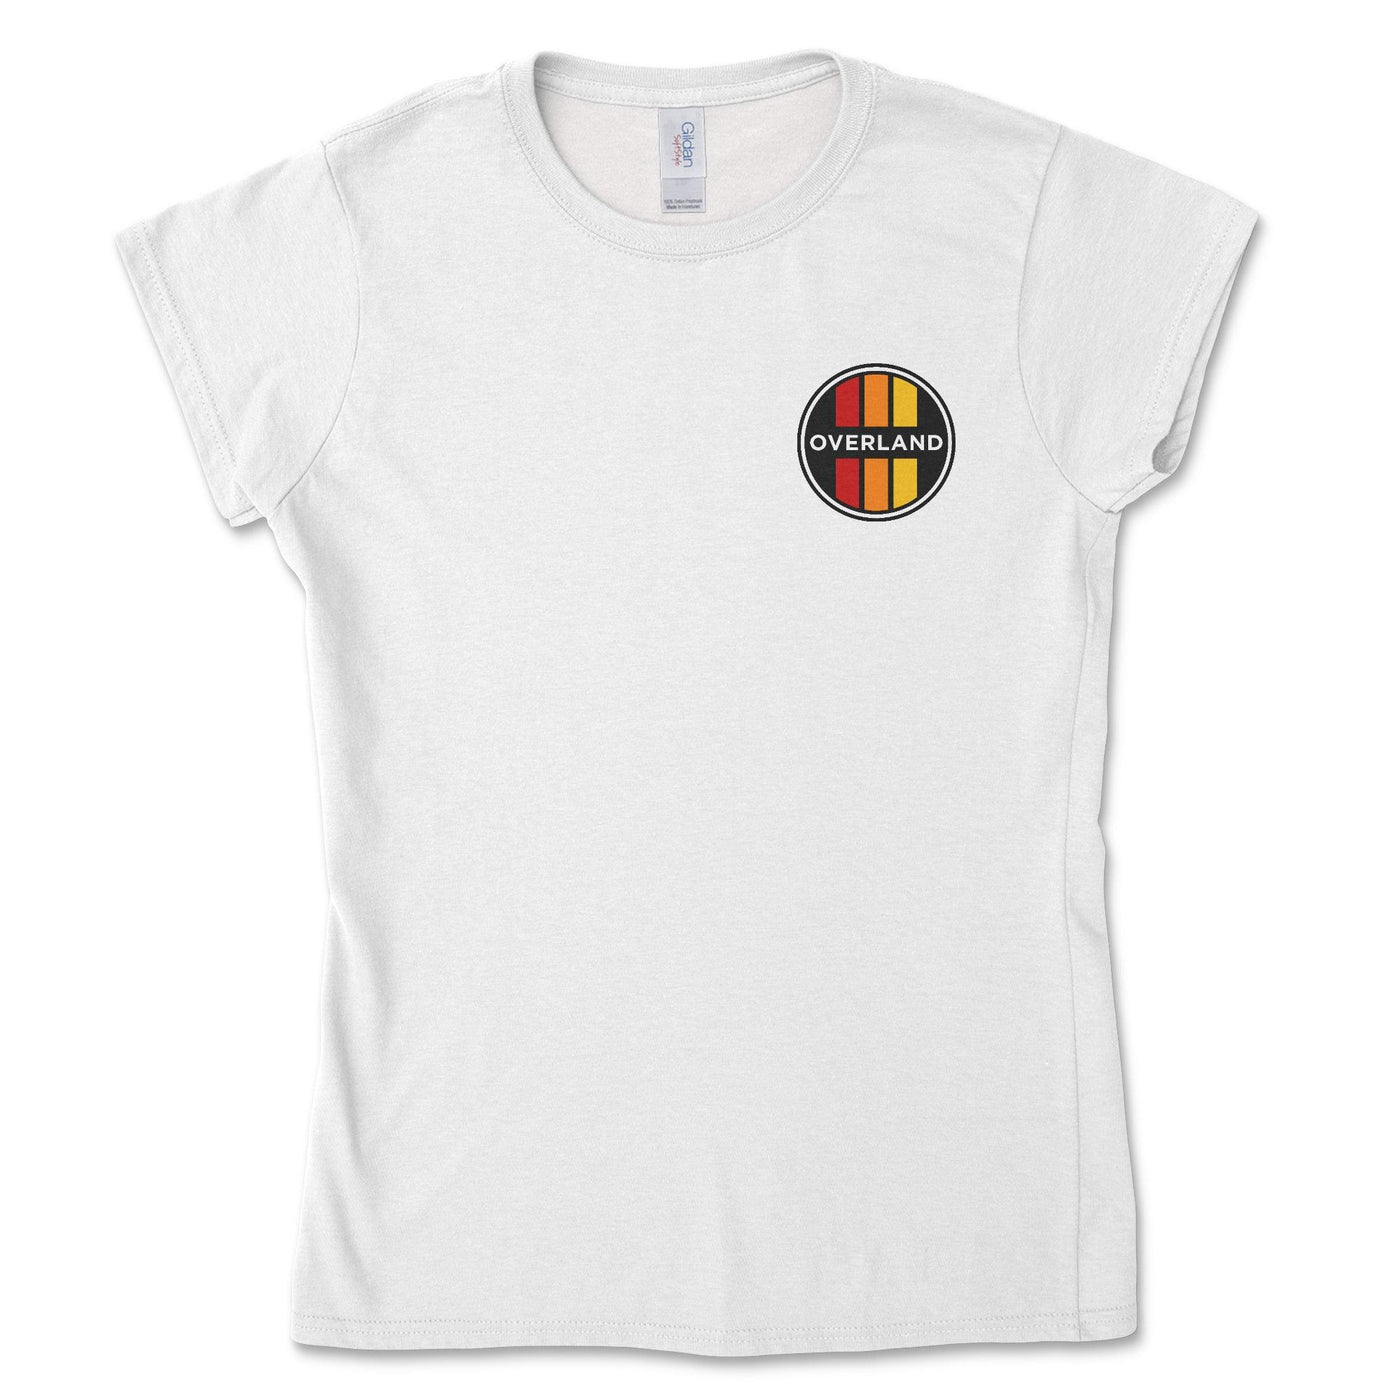 Overland Women's T-shirt - Goats Trail